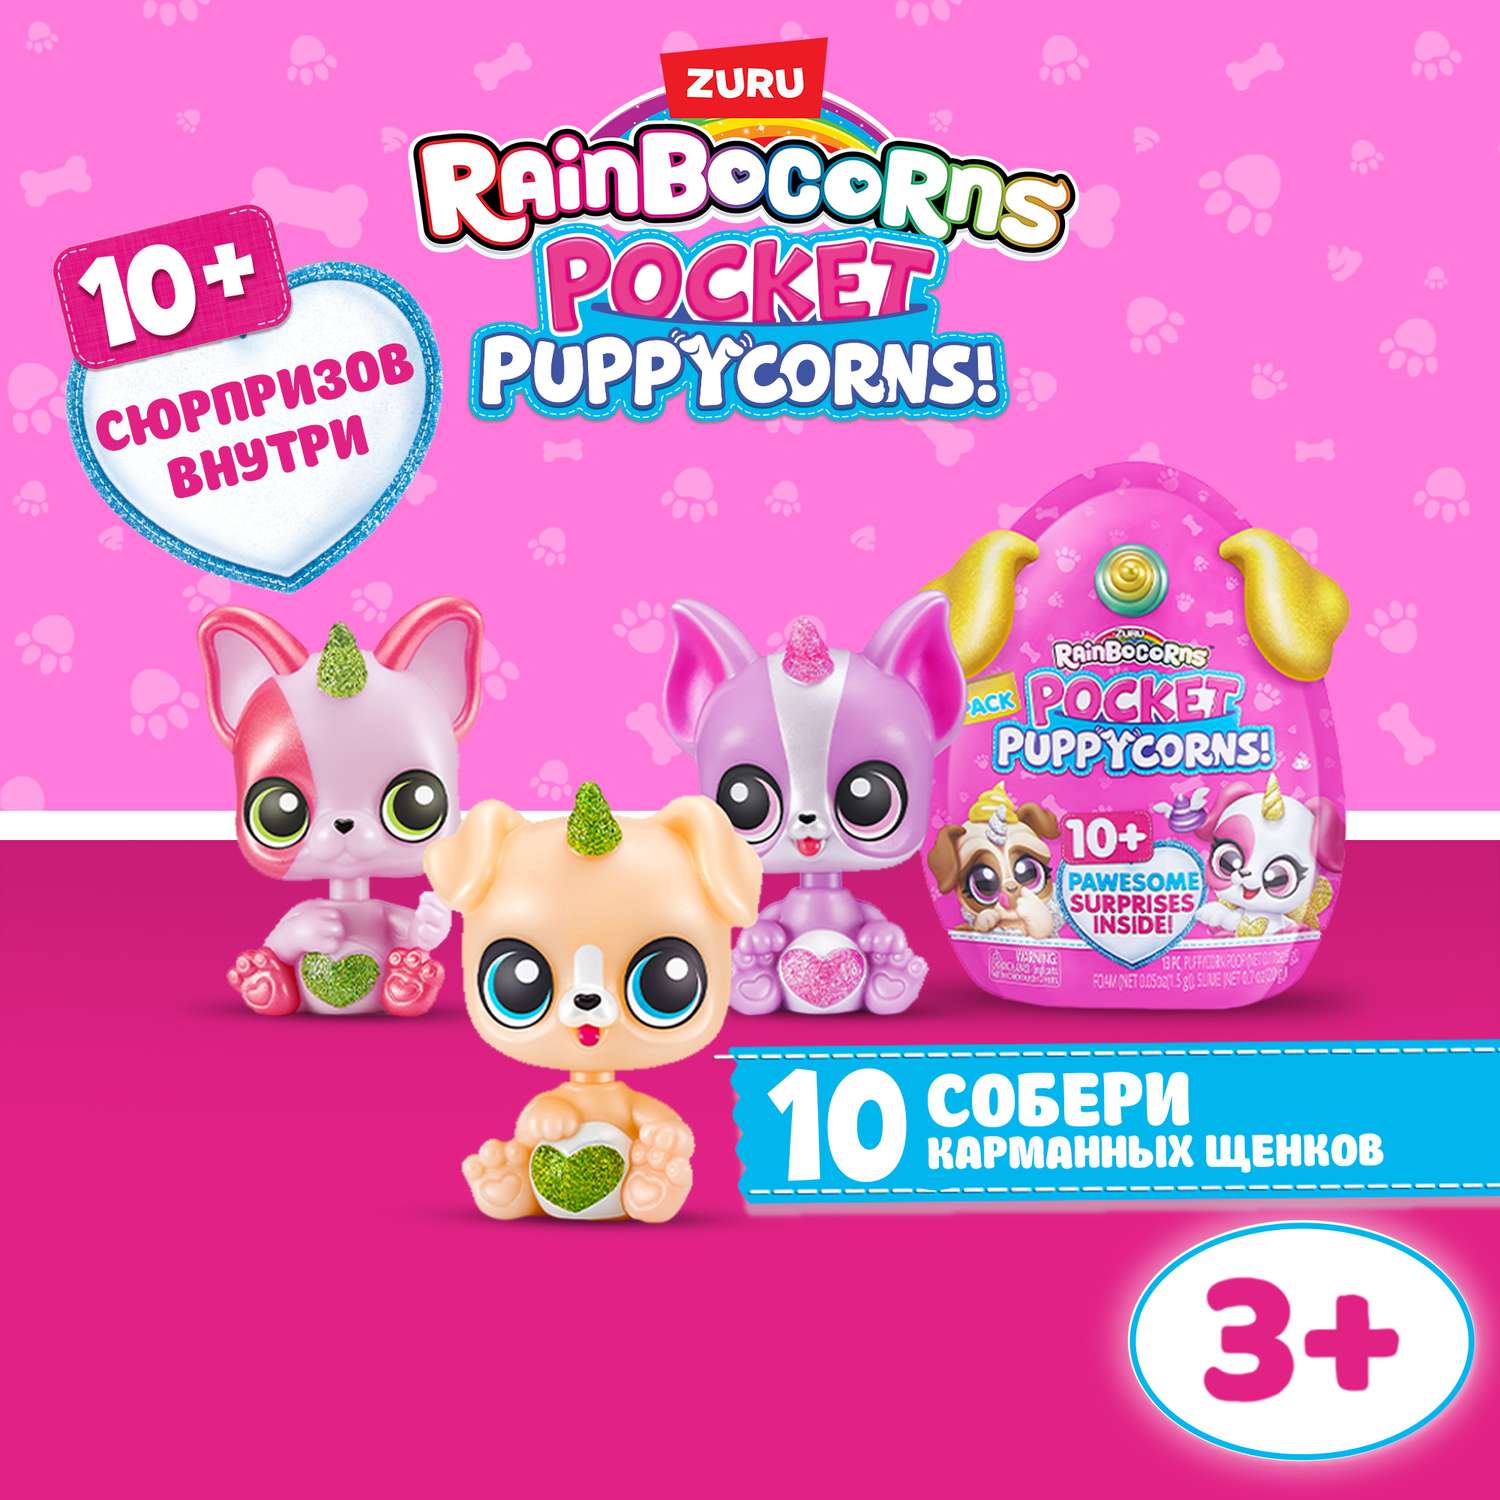 Игрушка Rainbocorns Puppycorn в непрозрачной упаковке (Сюрприз) 9284SQ1 - фото 1